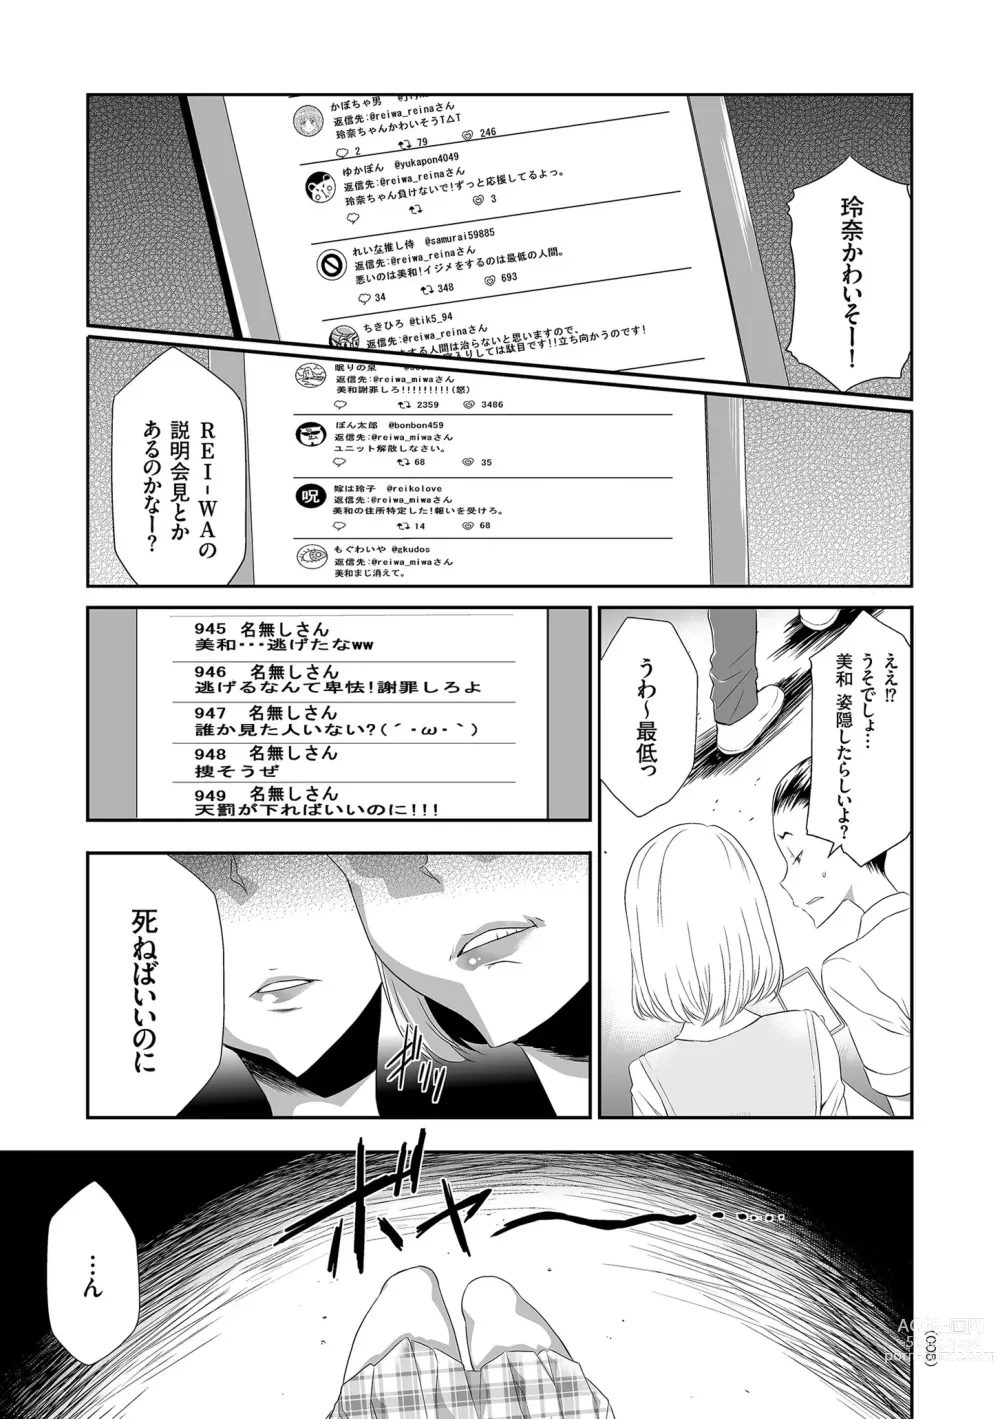 Page 5 of manga Idol Kankin Live!